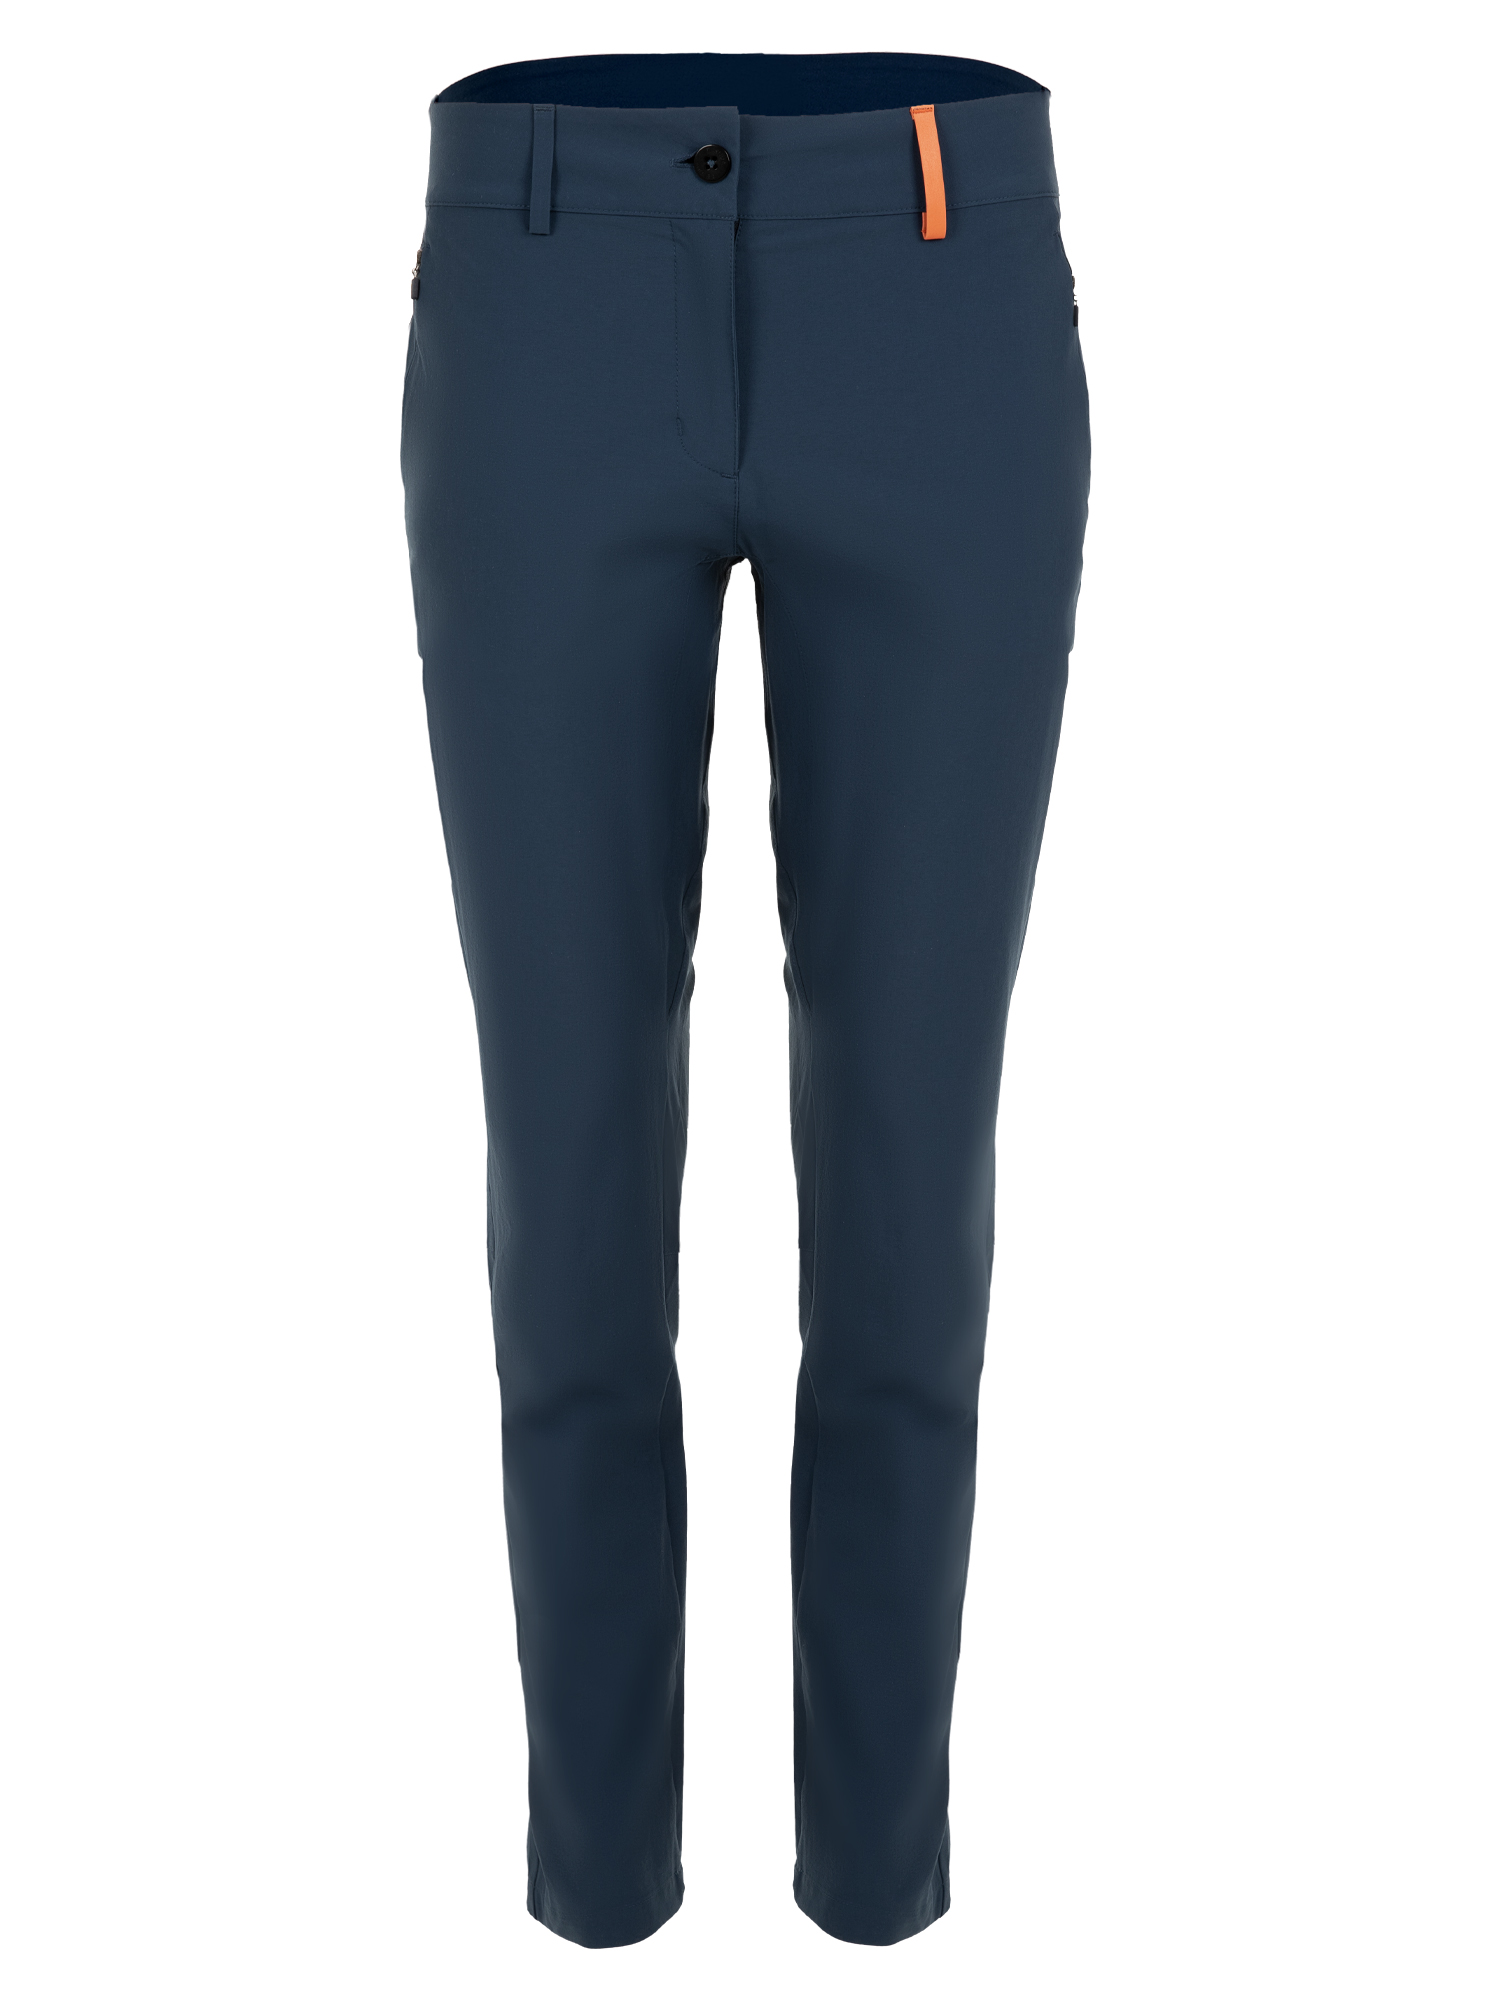 Спортивные брюки женские Ternua Nova Pt W синие S